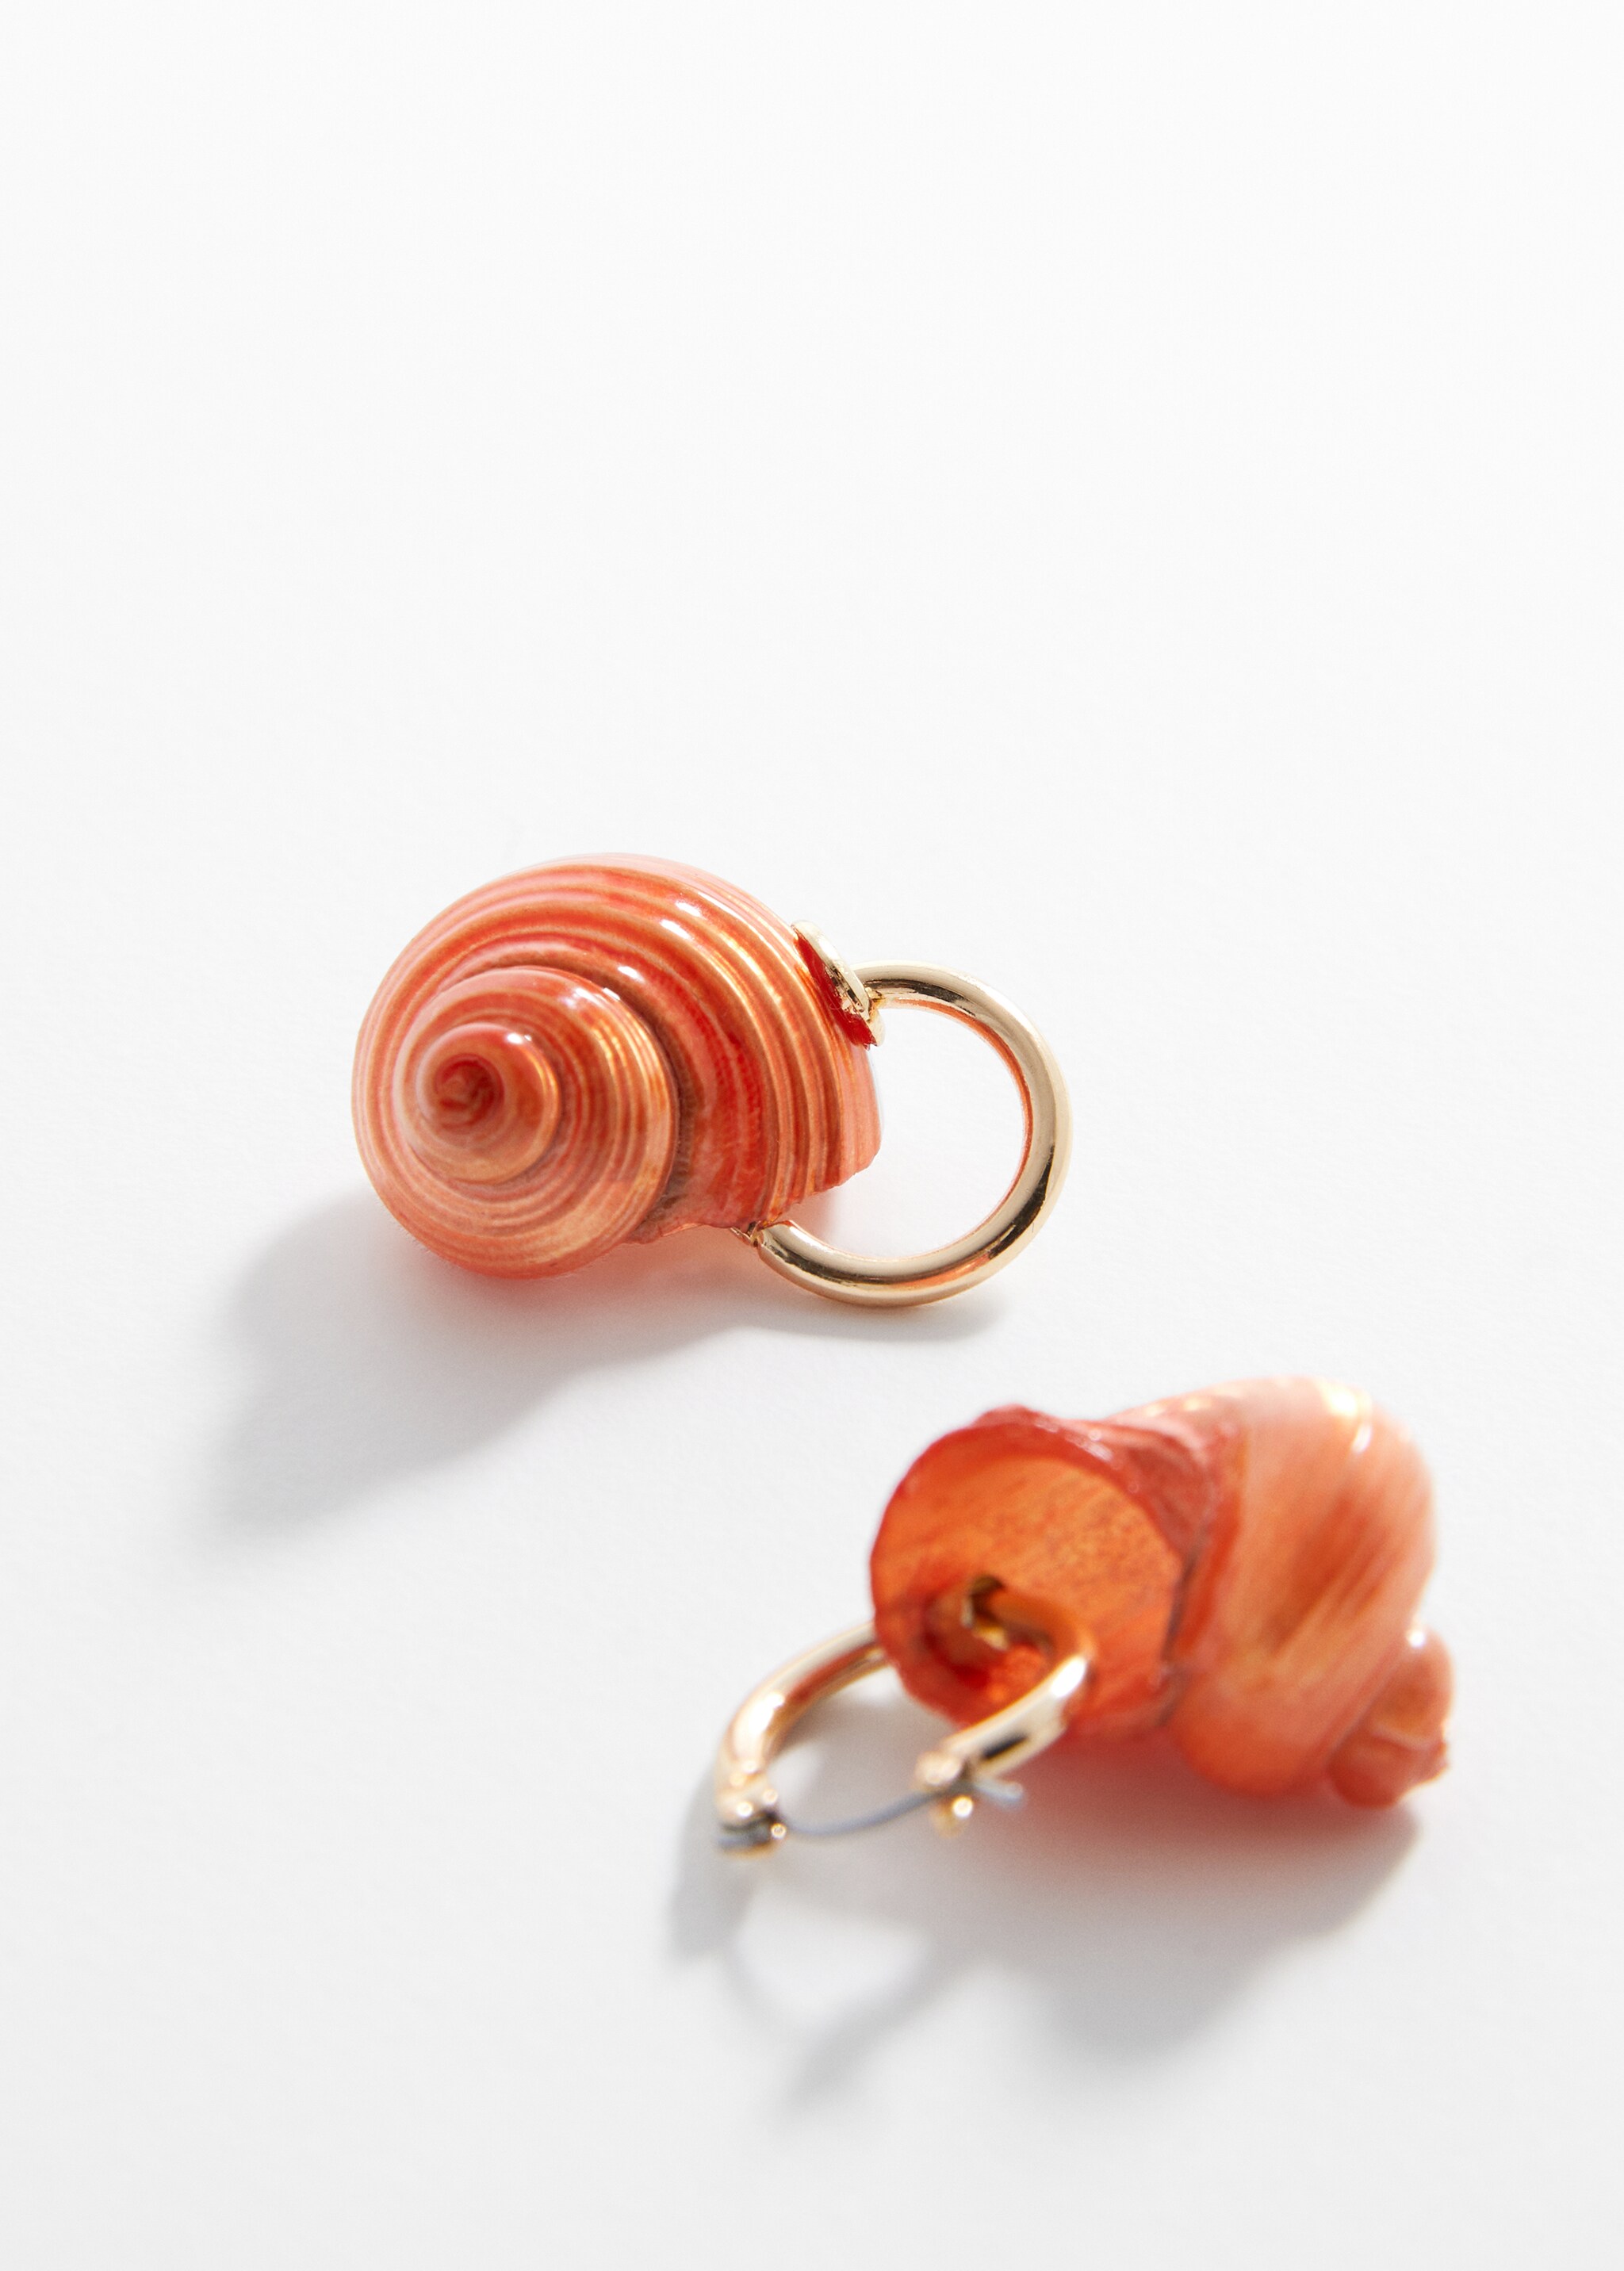 Shell earrings - Plan mediu